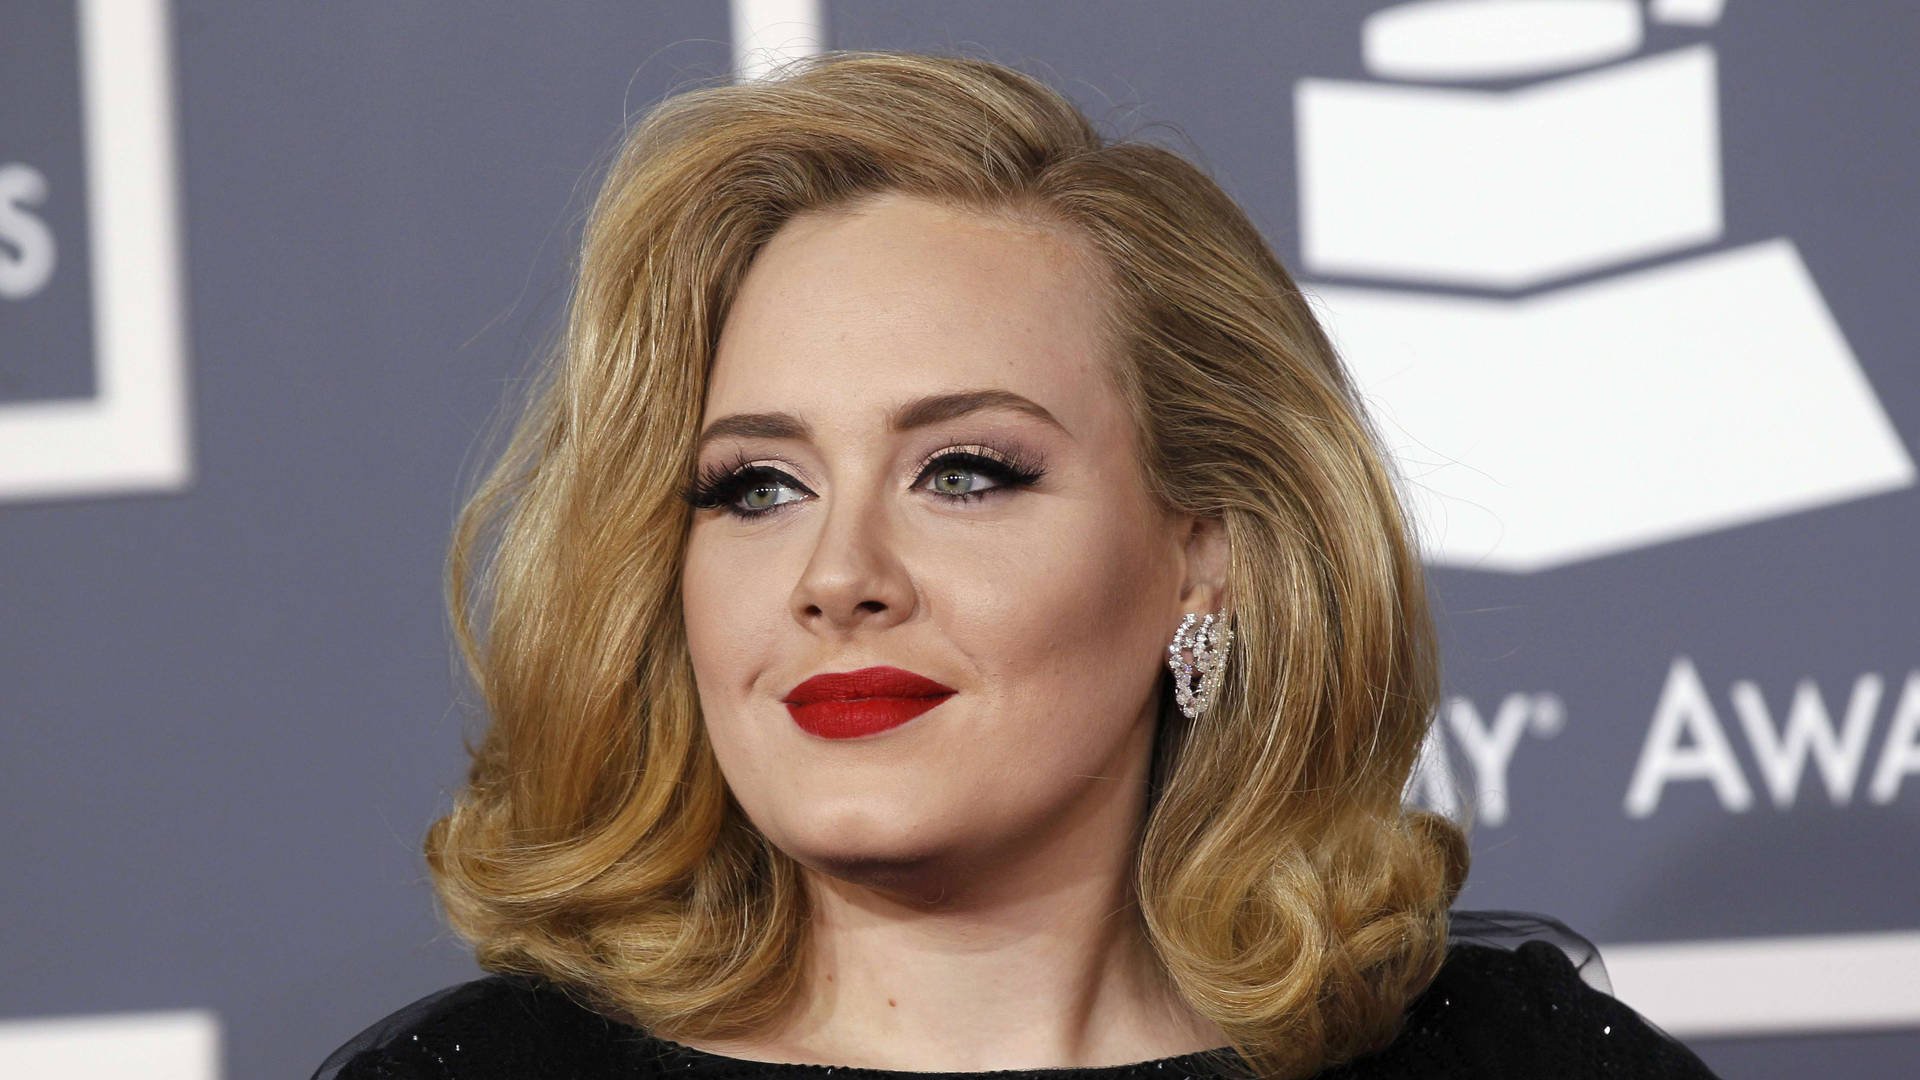 Adele Grammy Awards